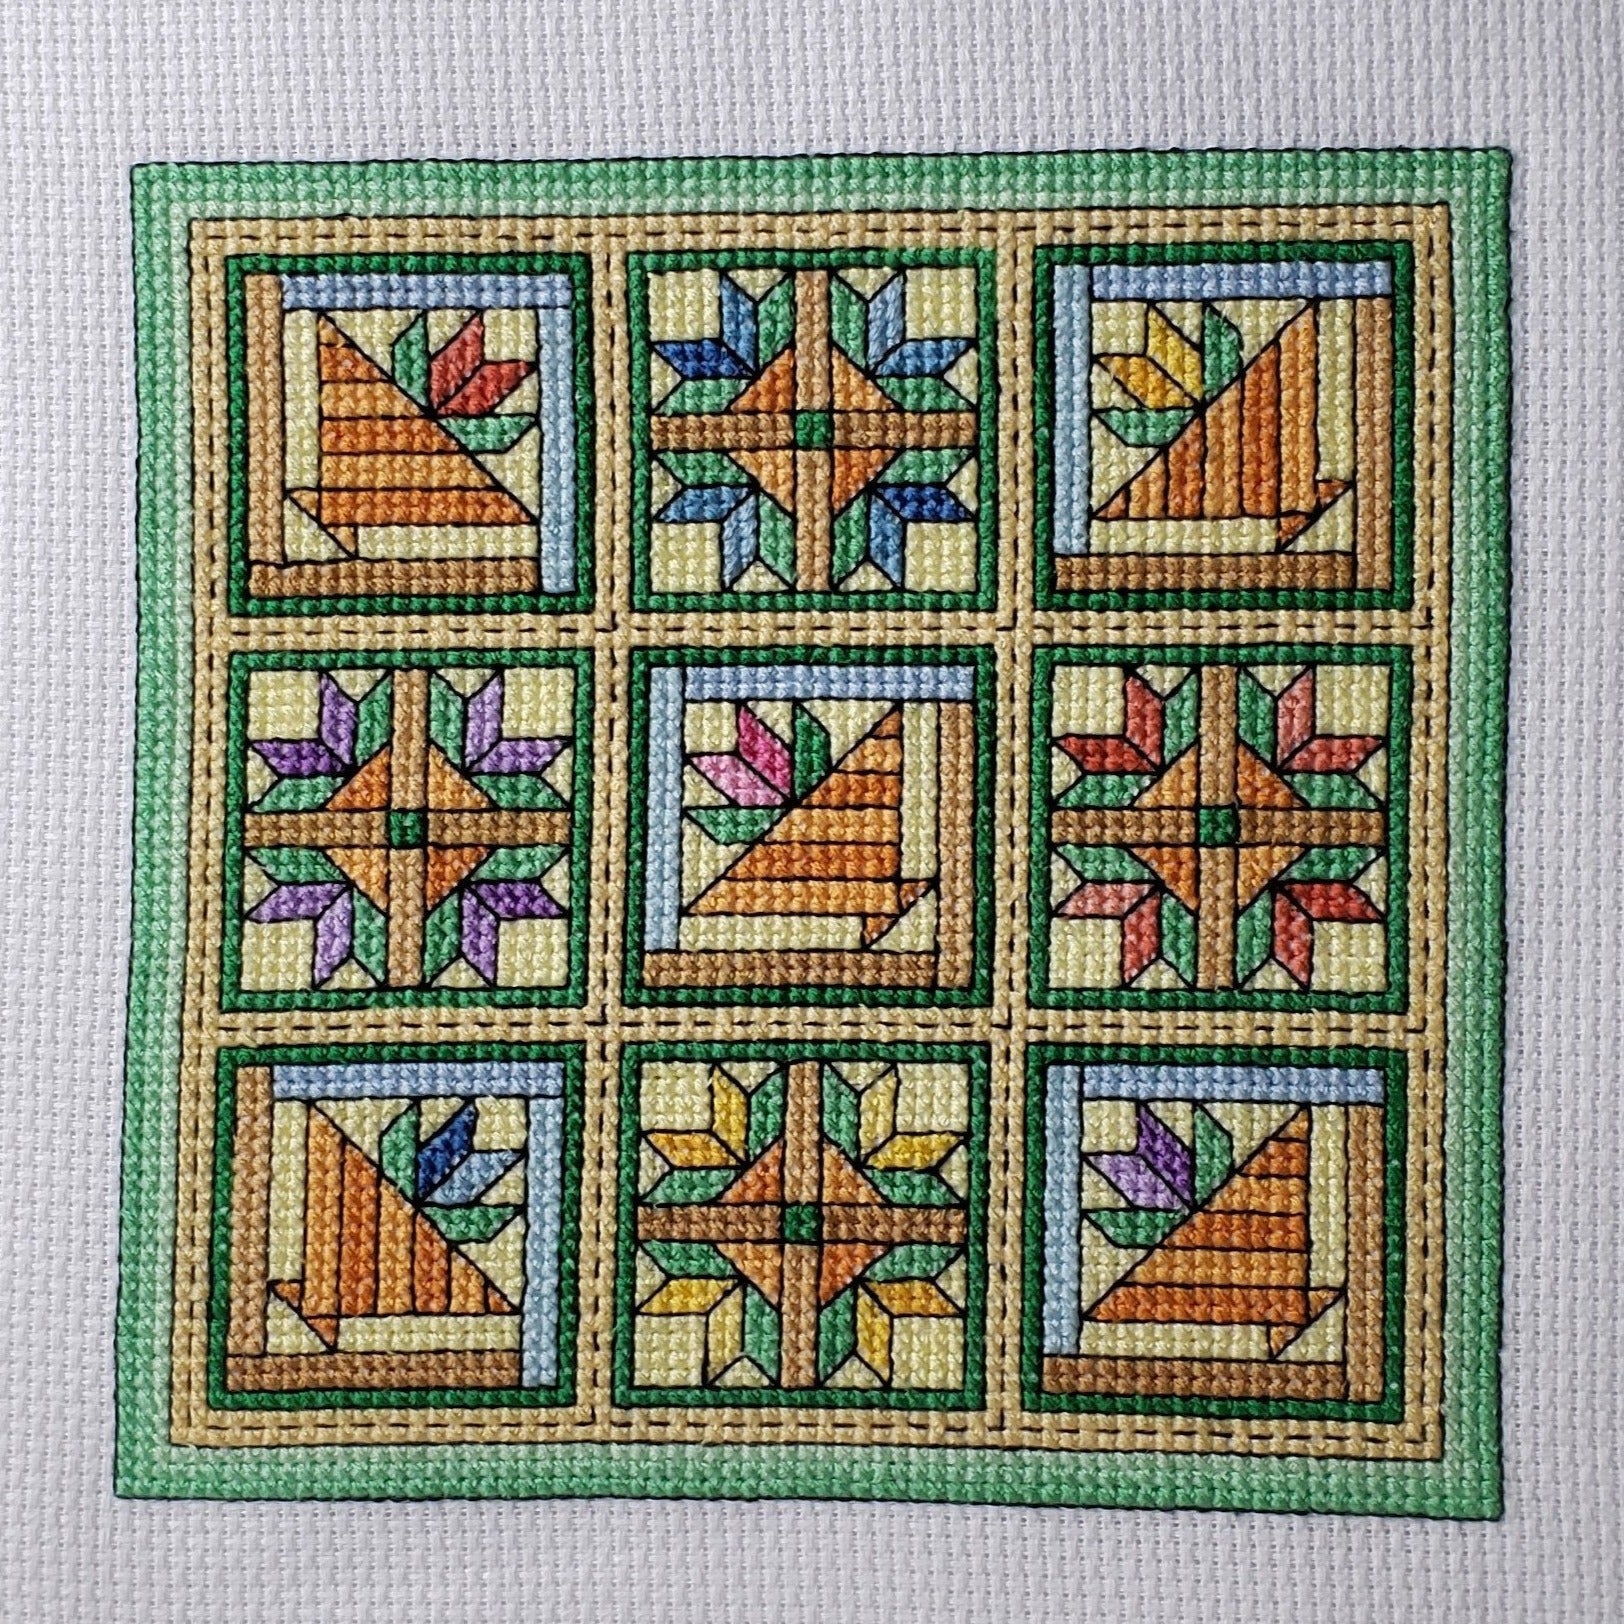 Flower Basket / Quilt Blocks 2 - Cross Stitch Pattern